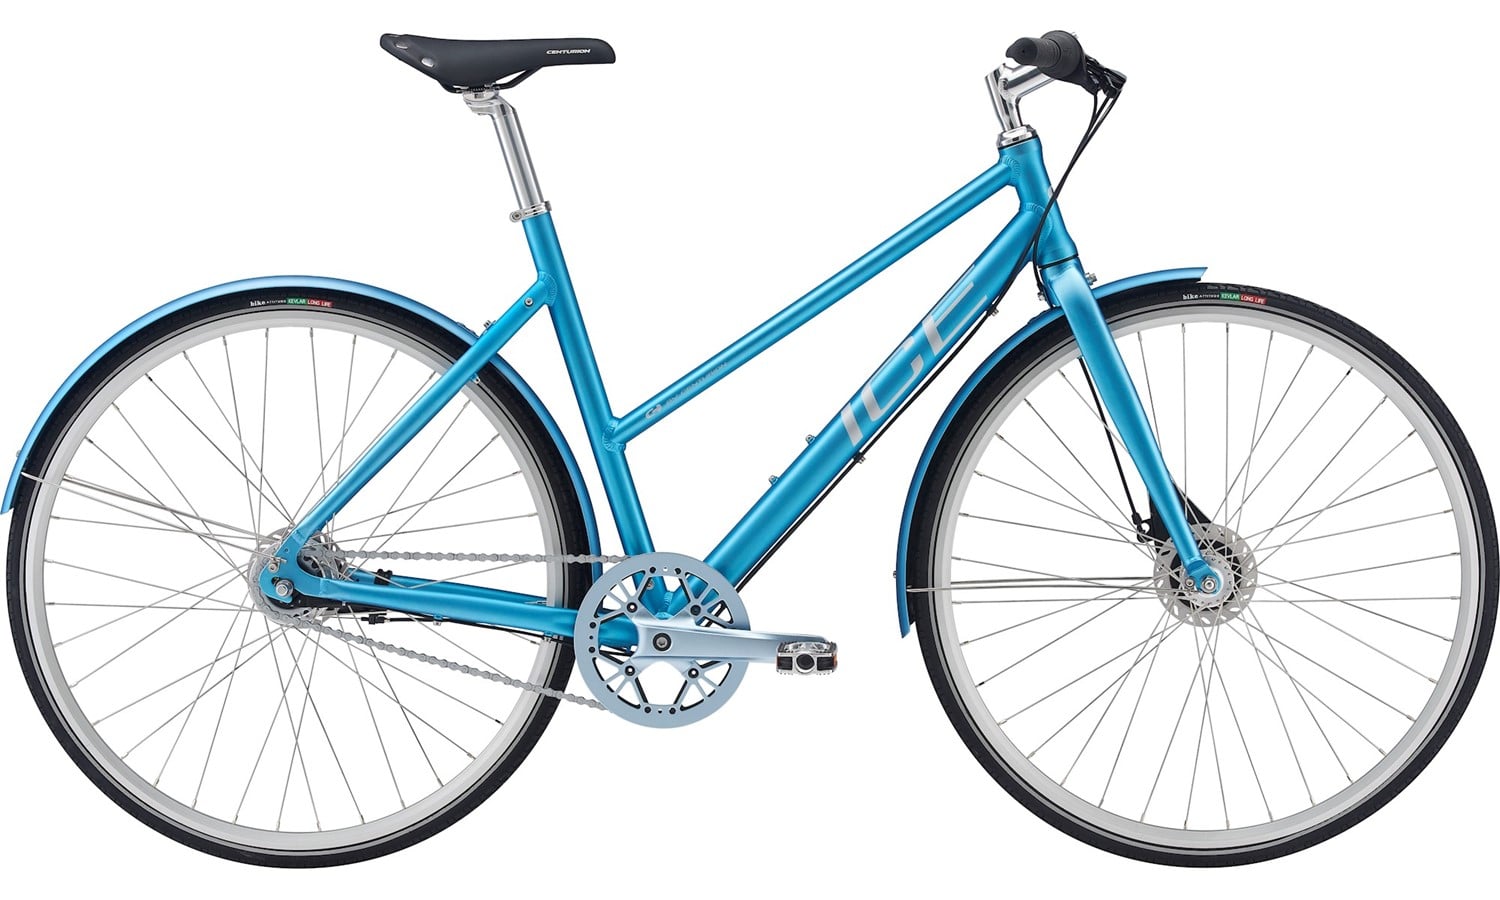 Centurion citybikes er til dig, der vil have en praktisk og effektiv cykel, men samtidig gerne vil sikre sig en cykel med et flot og trendy design.